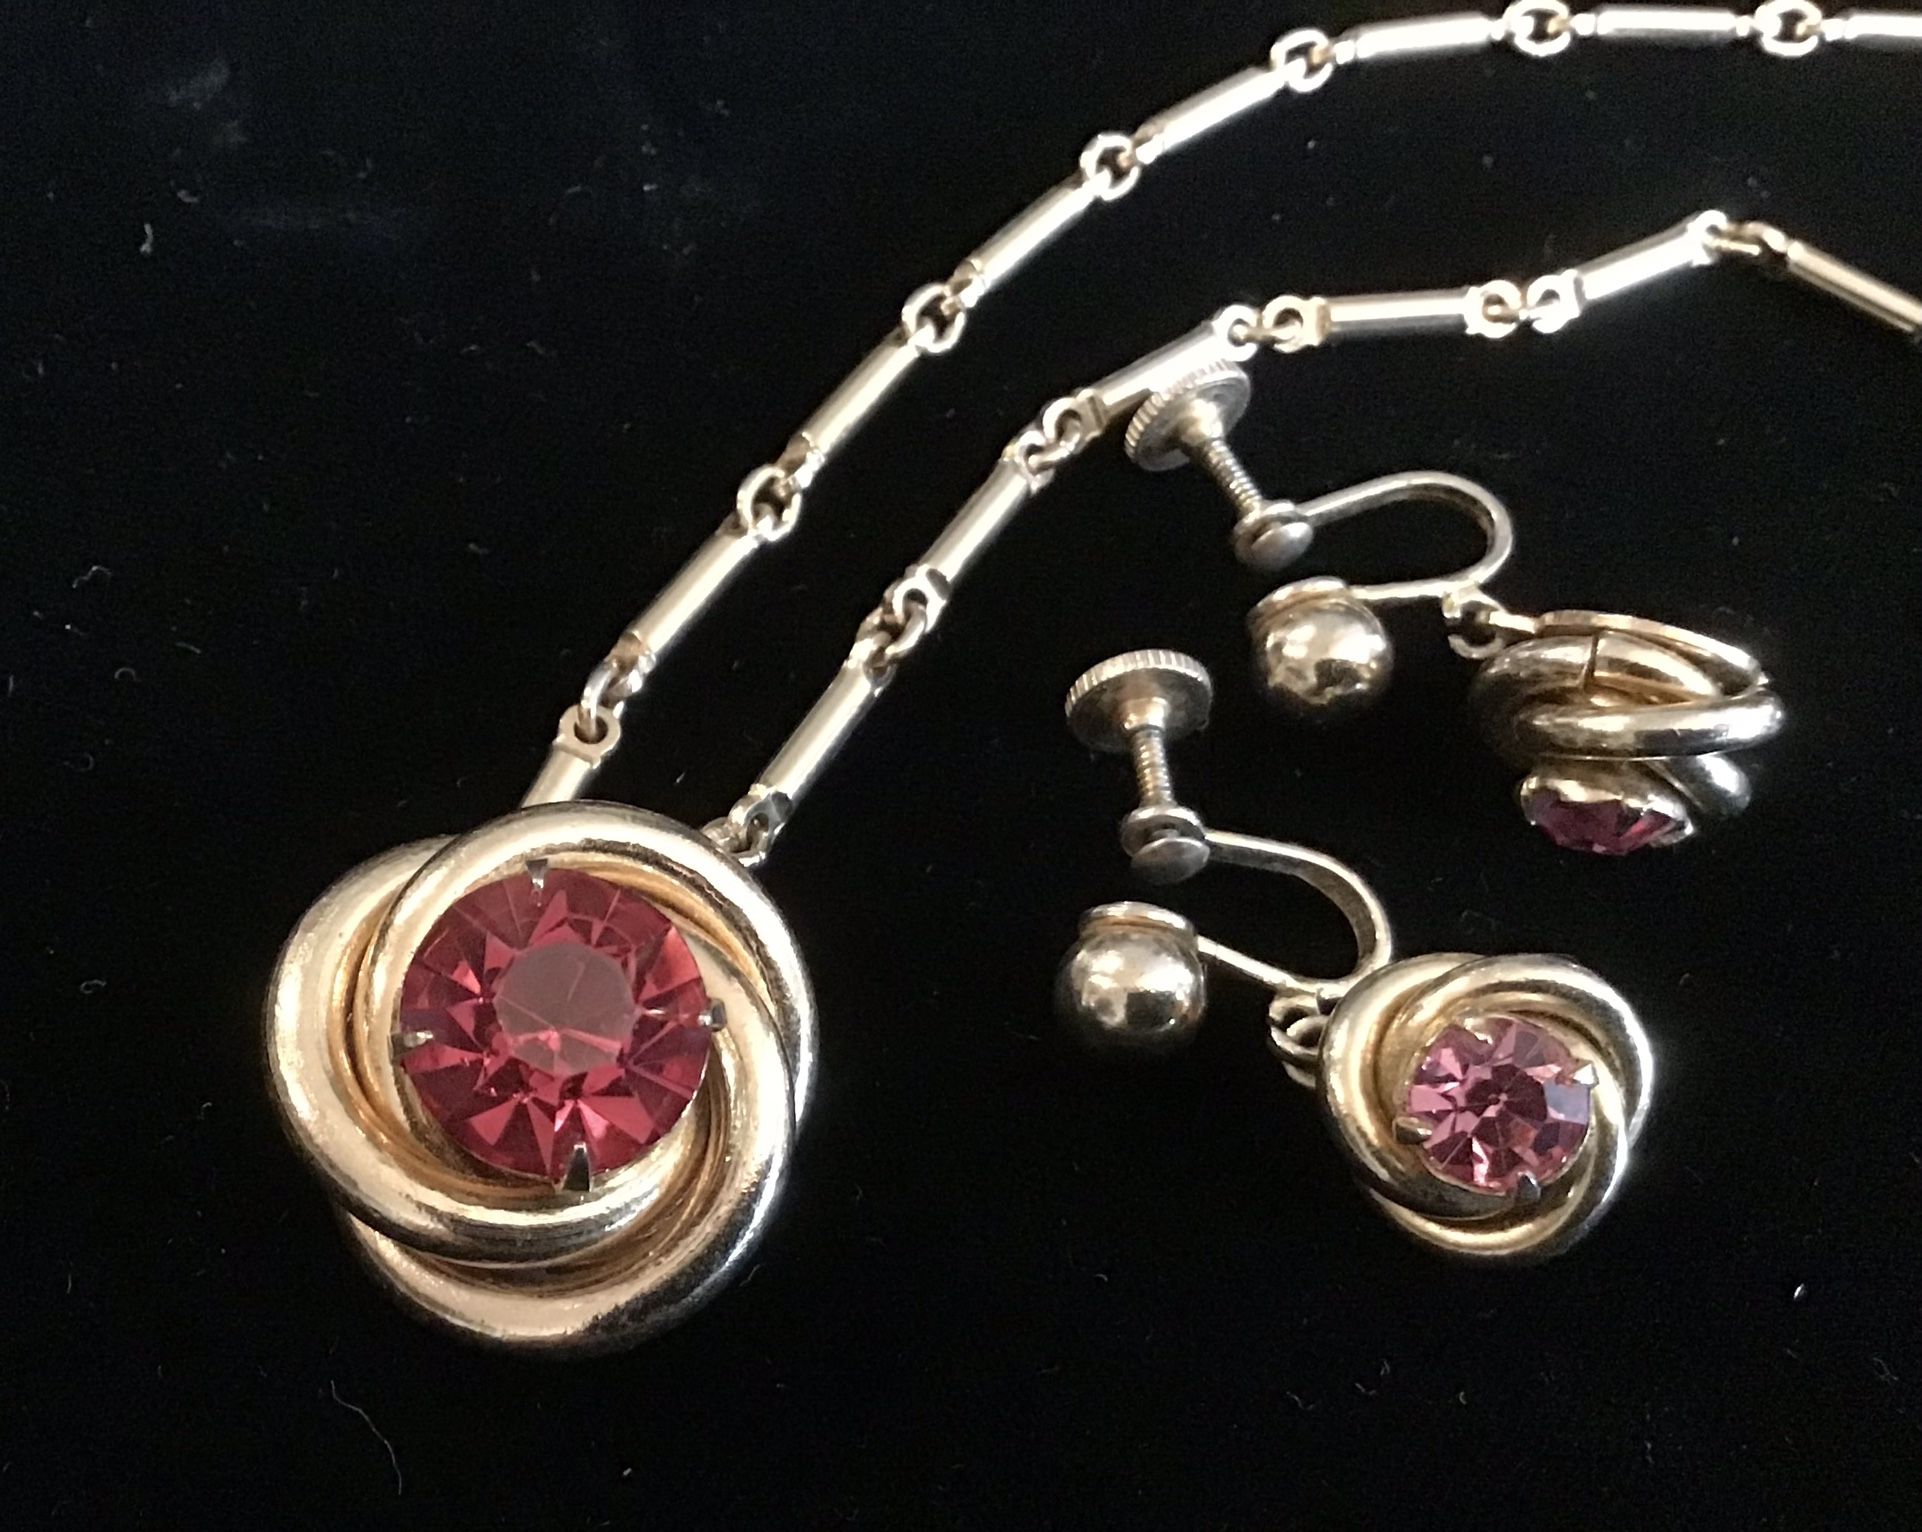 Coro Necklace & Earrings 